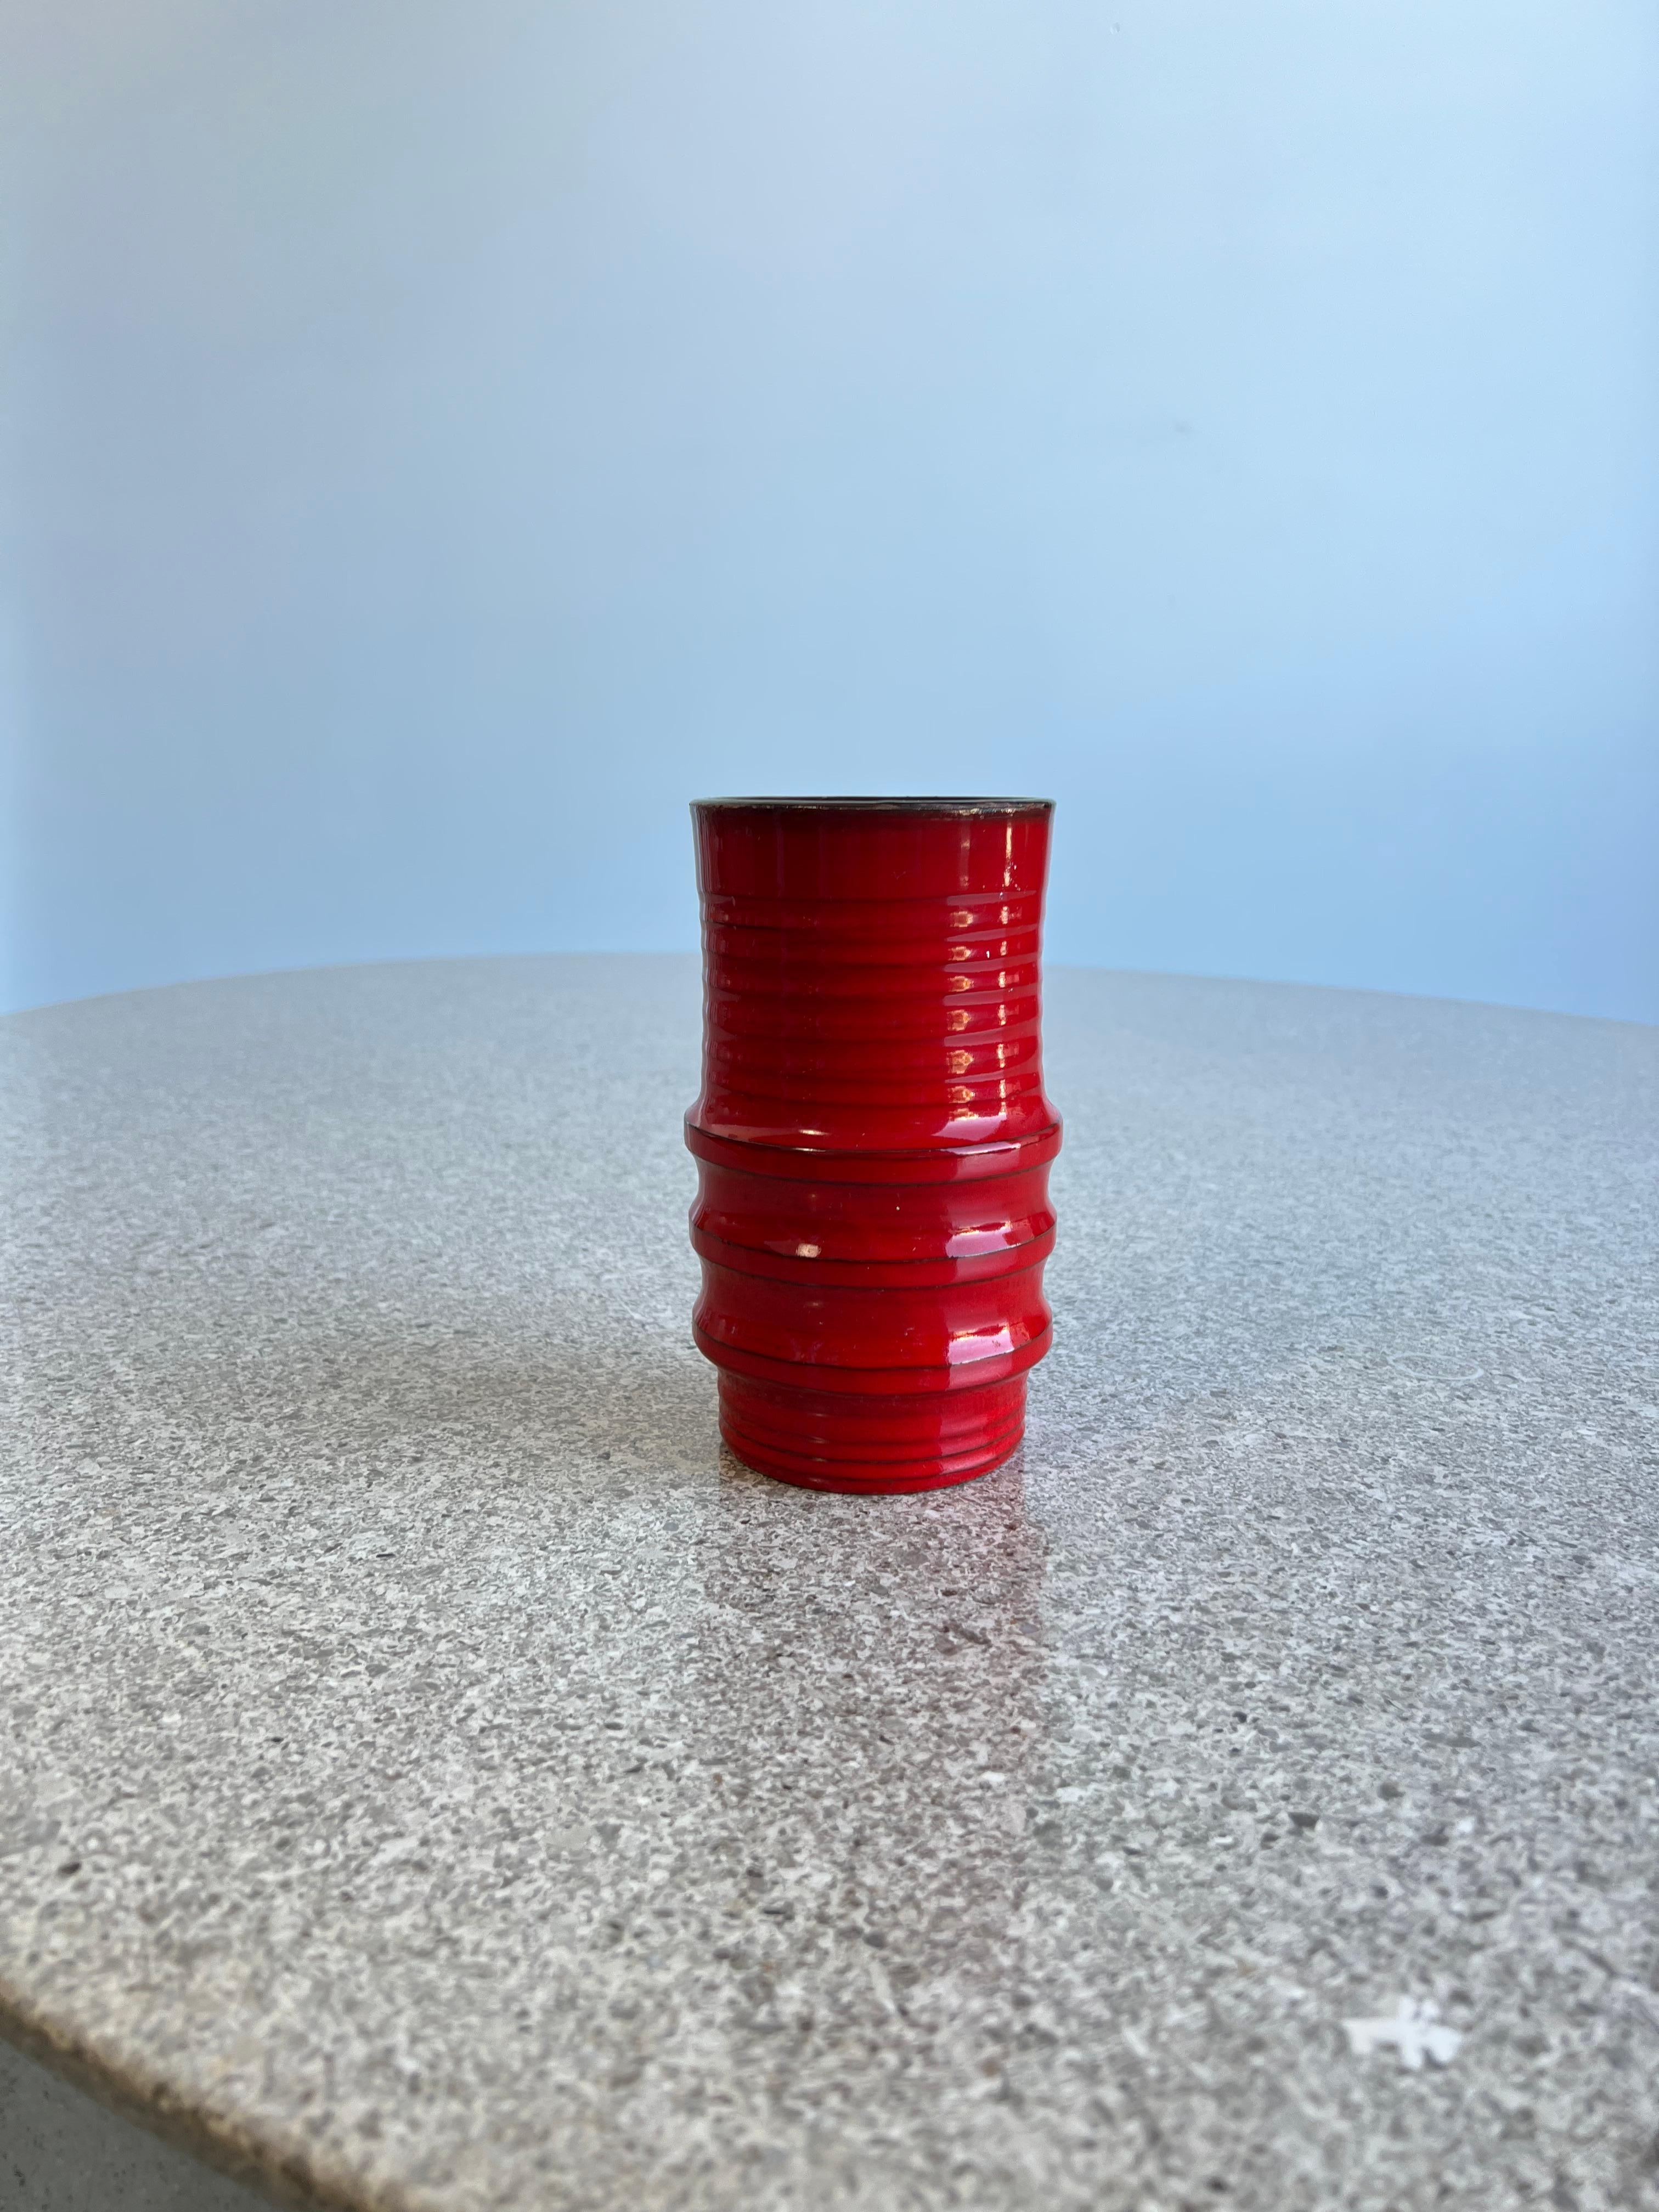 Vase rouge en céramique émaillée de Bitossi des années 1960.
Tampon sur le fond fabriqué en Italie, céramique originale en couleur rouge typique de Bitossi. 

